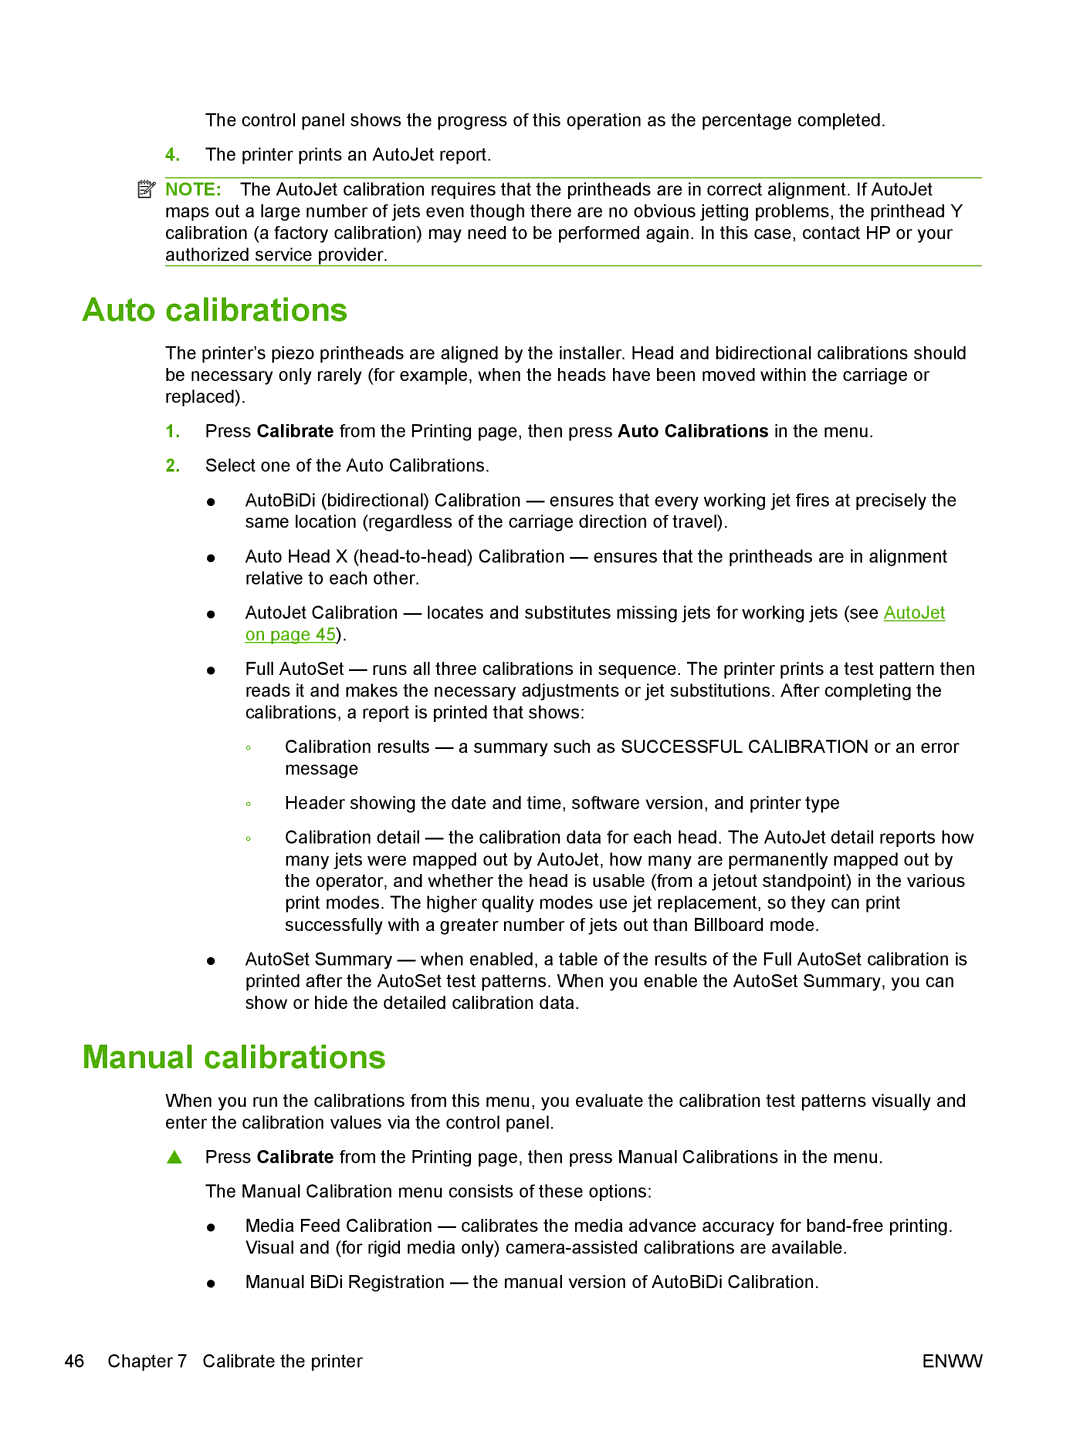 HP Scitex FB700 Industrial manual Auto calibrations, Manual calibrations 